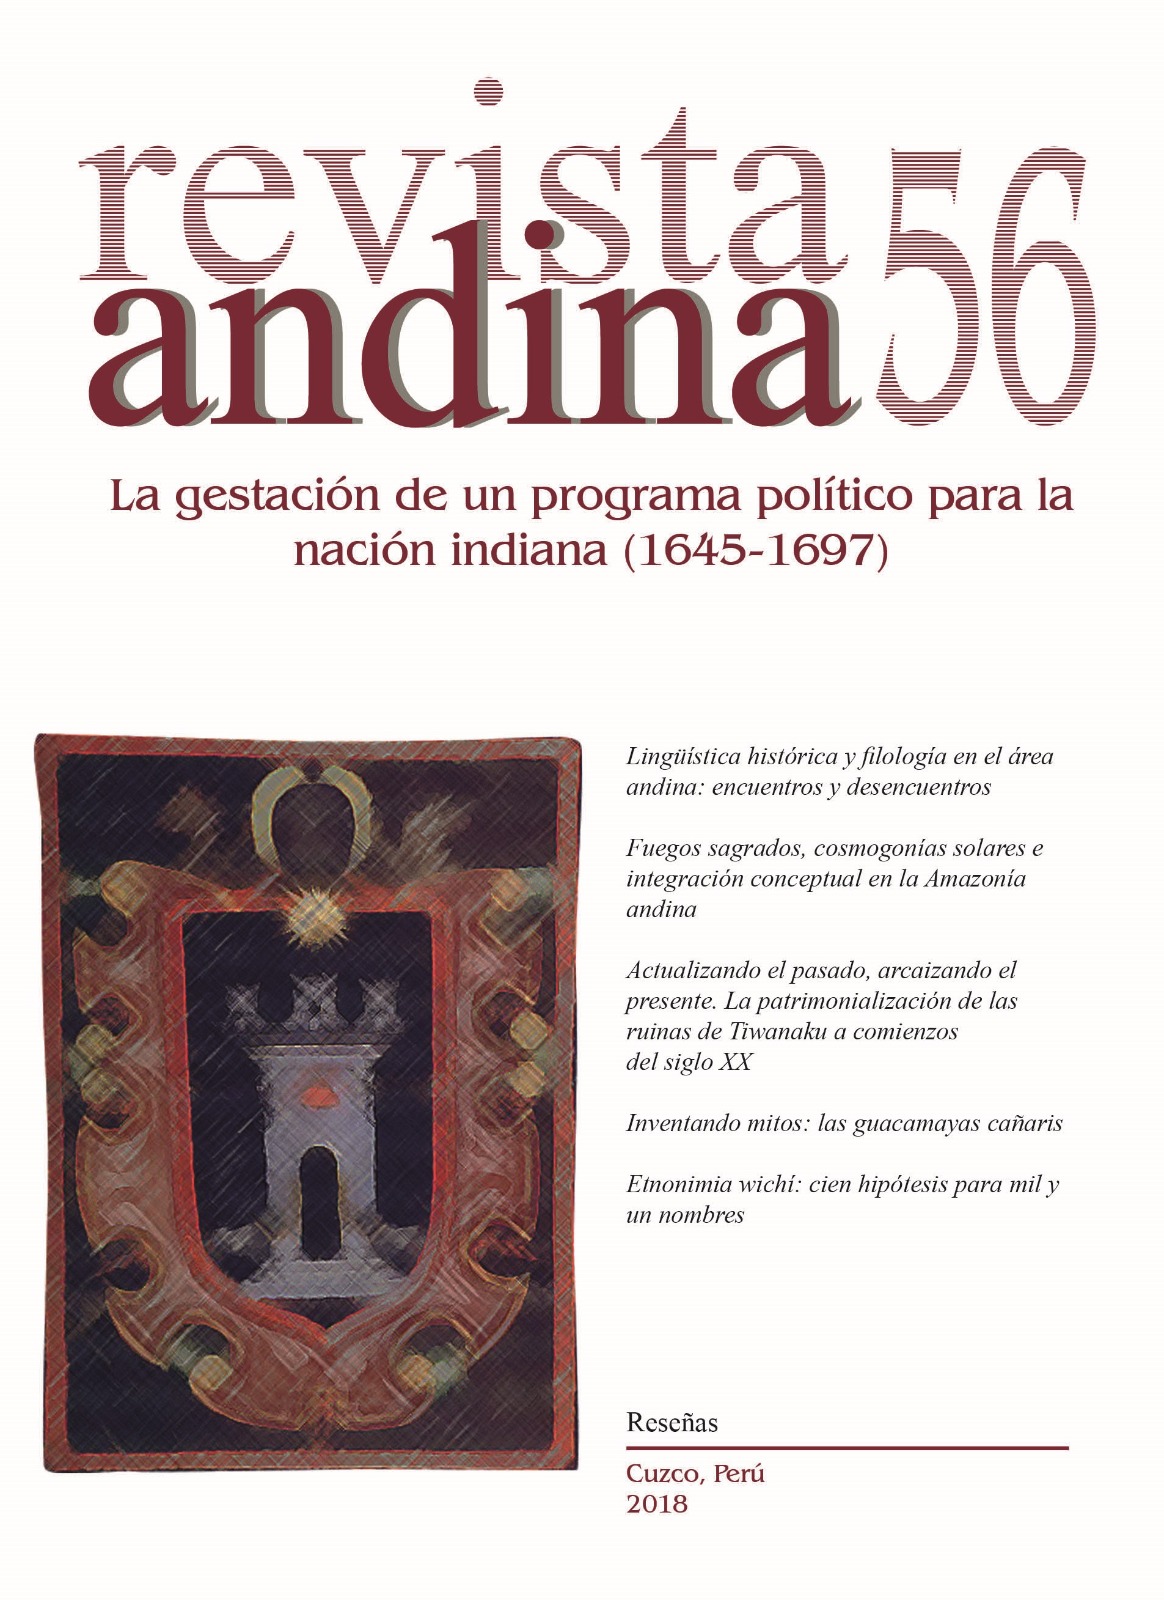 					Ver Núm. 56 (2018): Revista Andina N° 56
				